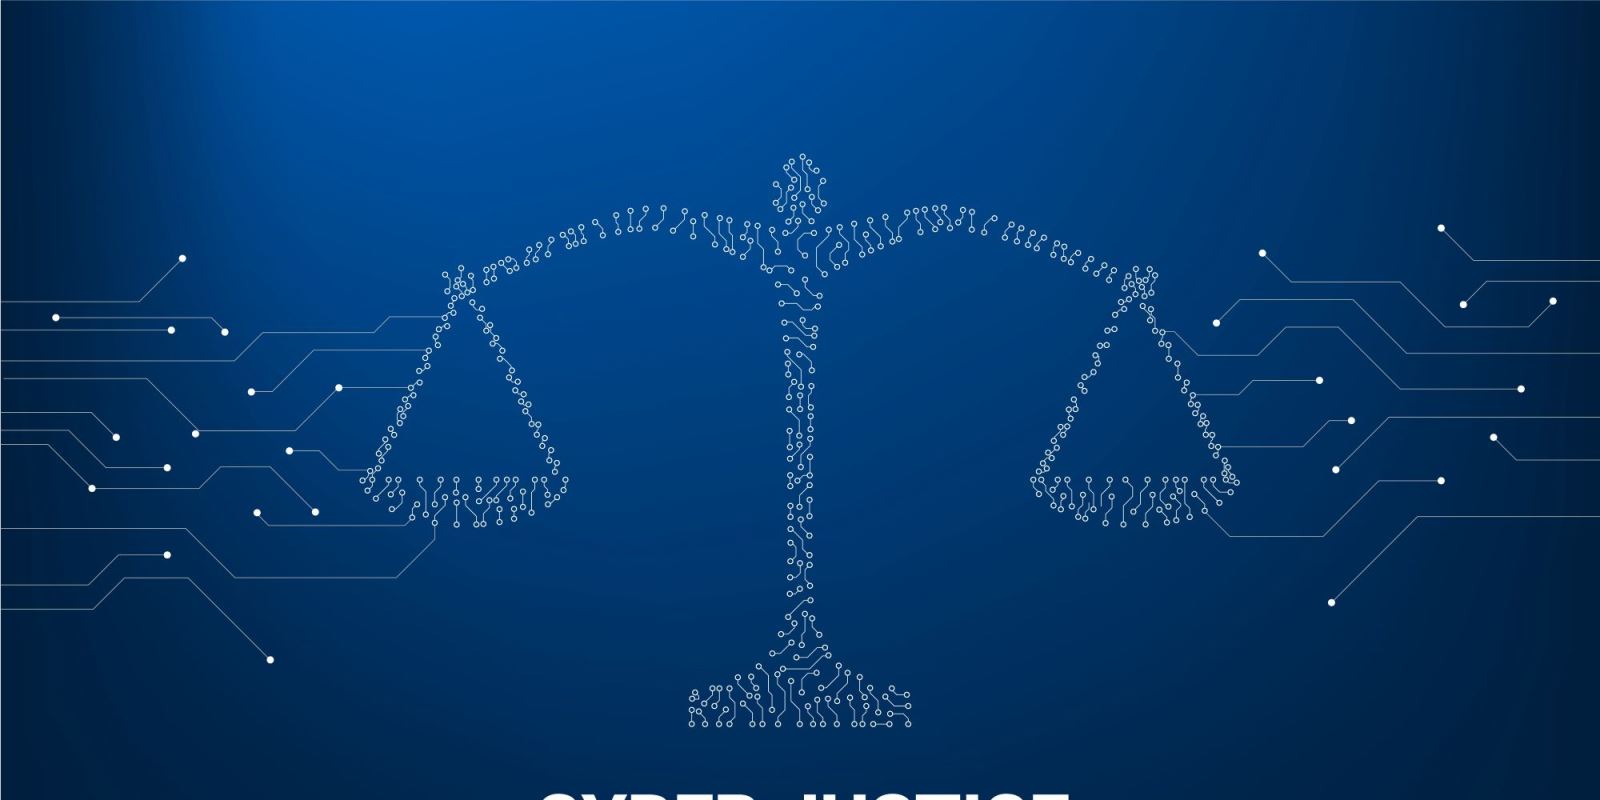 Νομική & Τεχνολογία: Η Επόμενη Μεγάλη Ευκαιρία στα Νομικά Επαγγέλματα